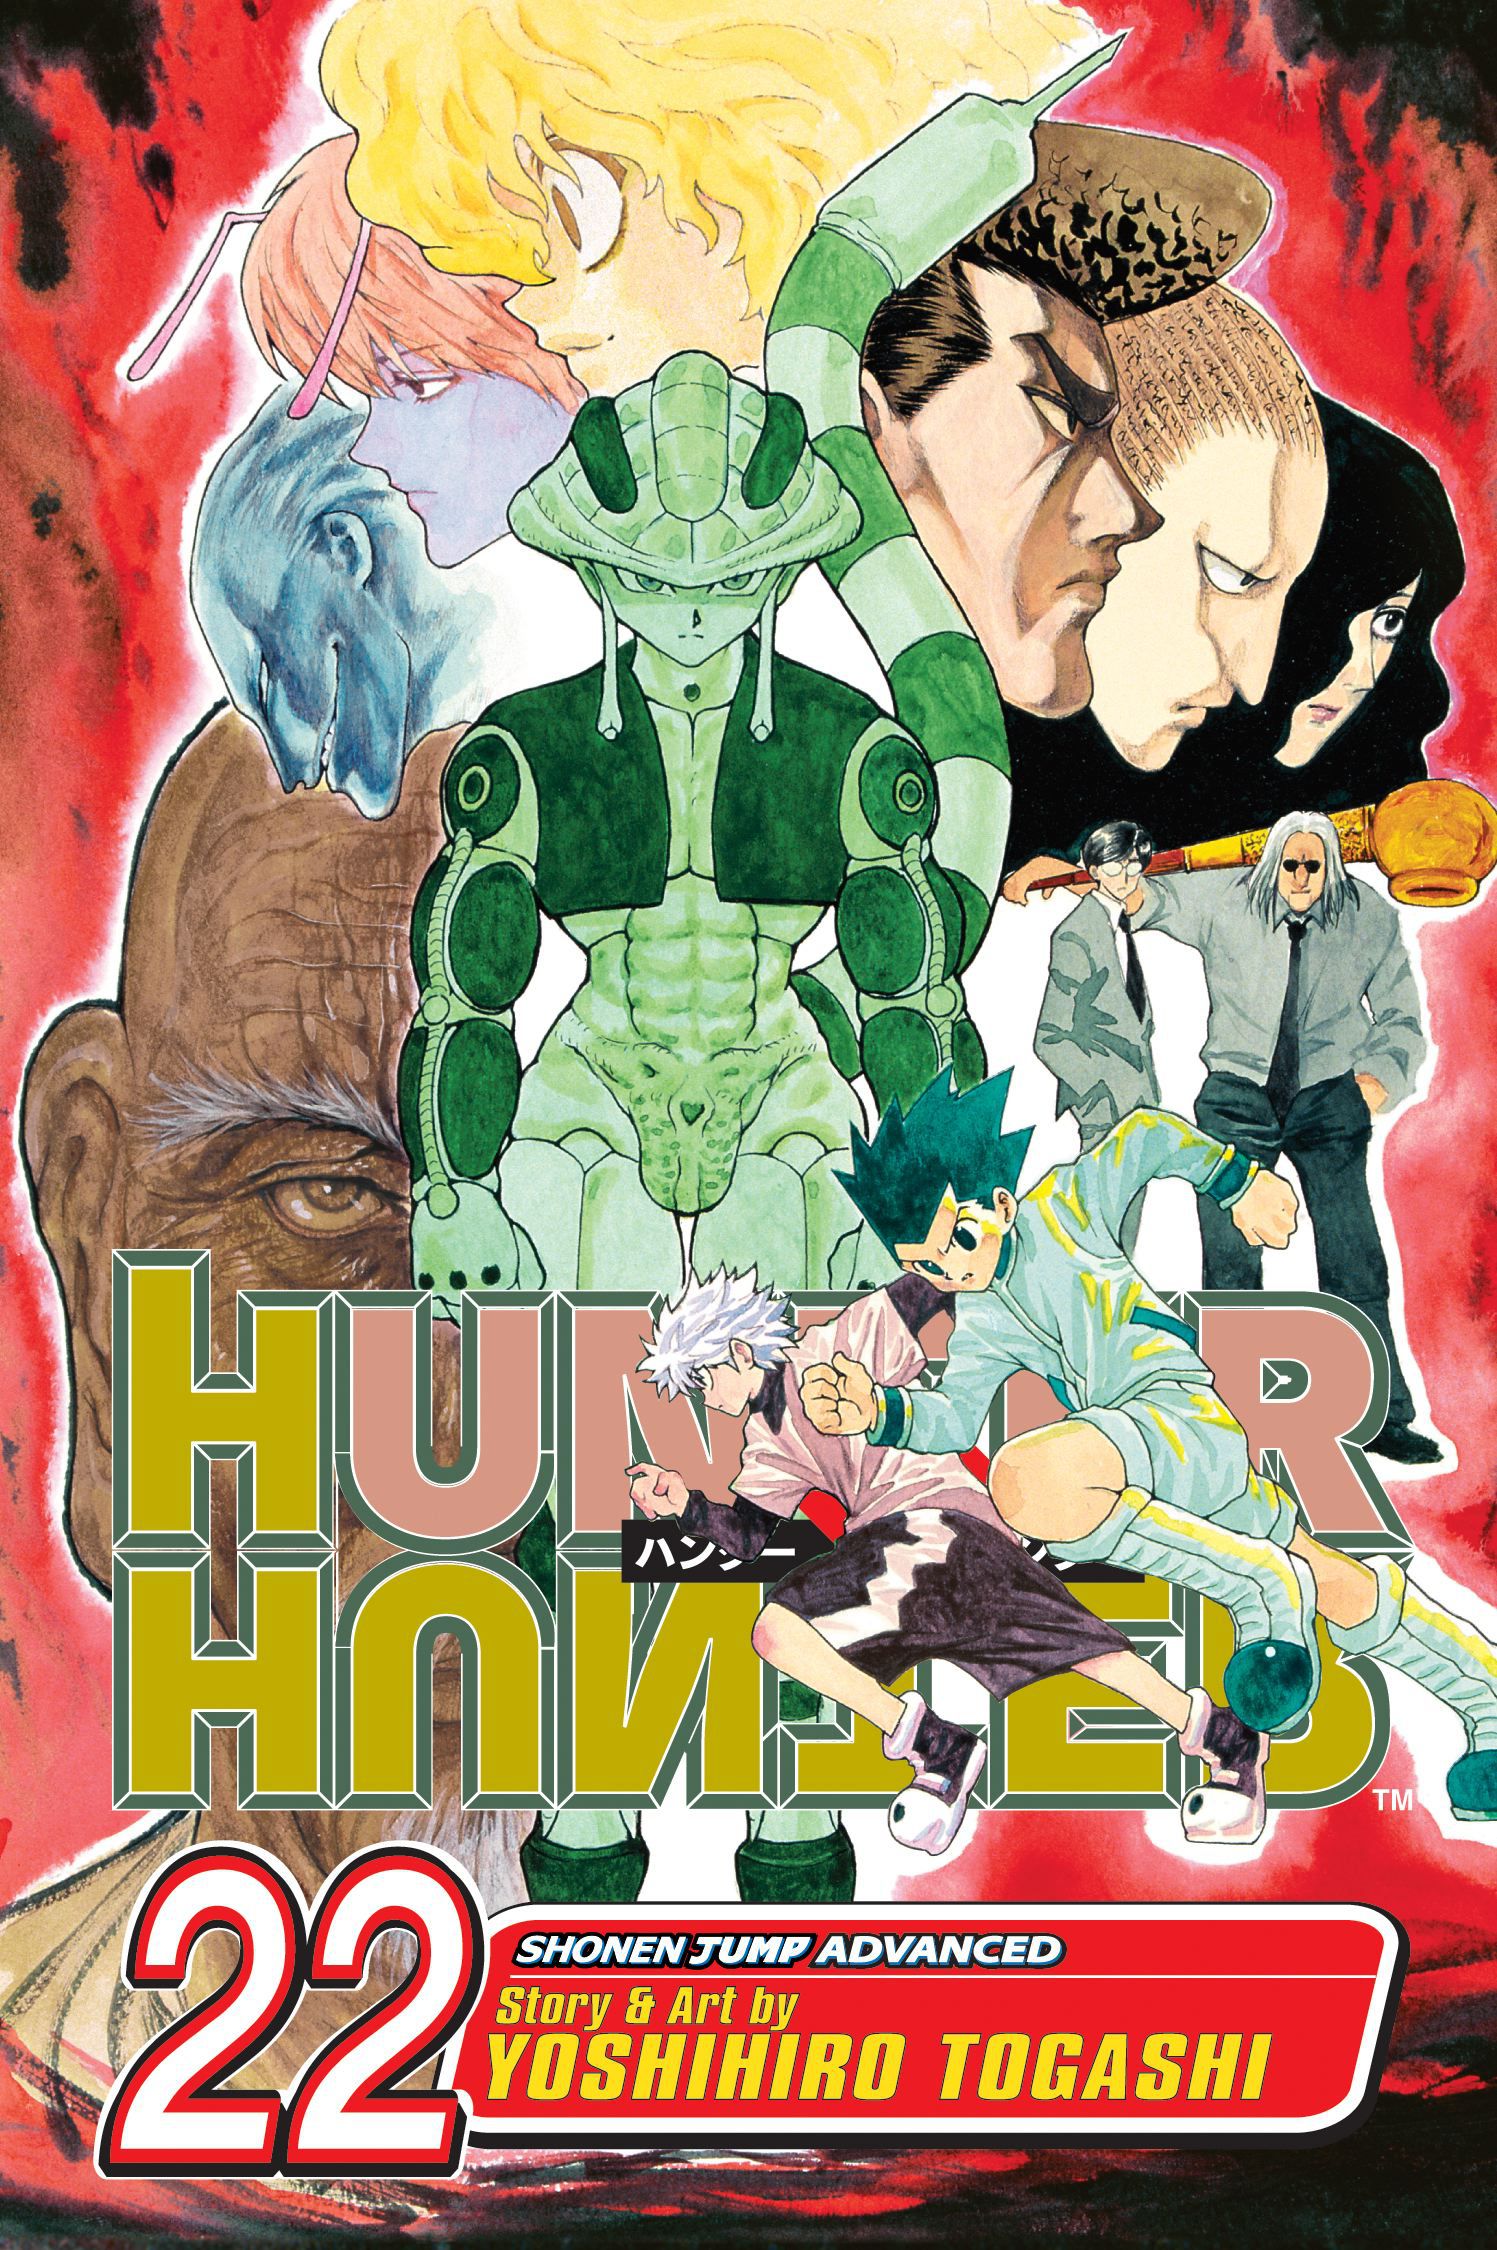 HuntexHunter regresa, manga: en qué orden ver el anime 1999 y 2011